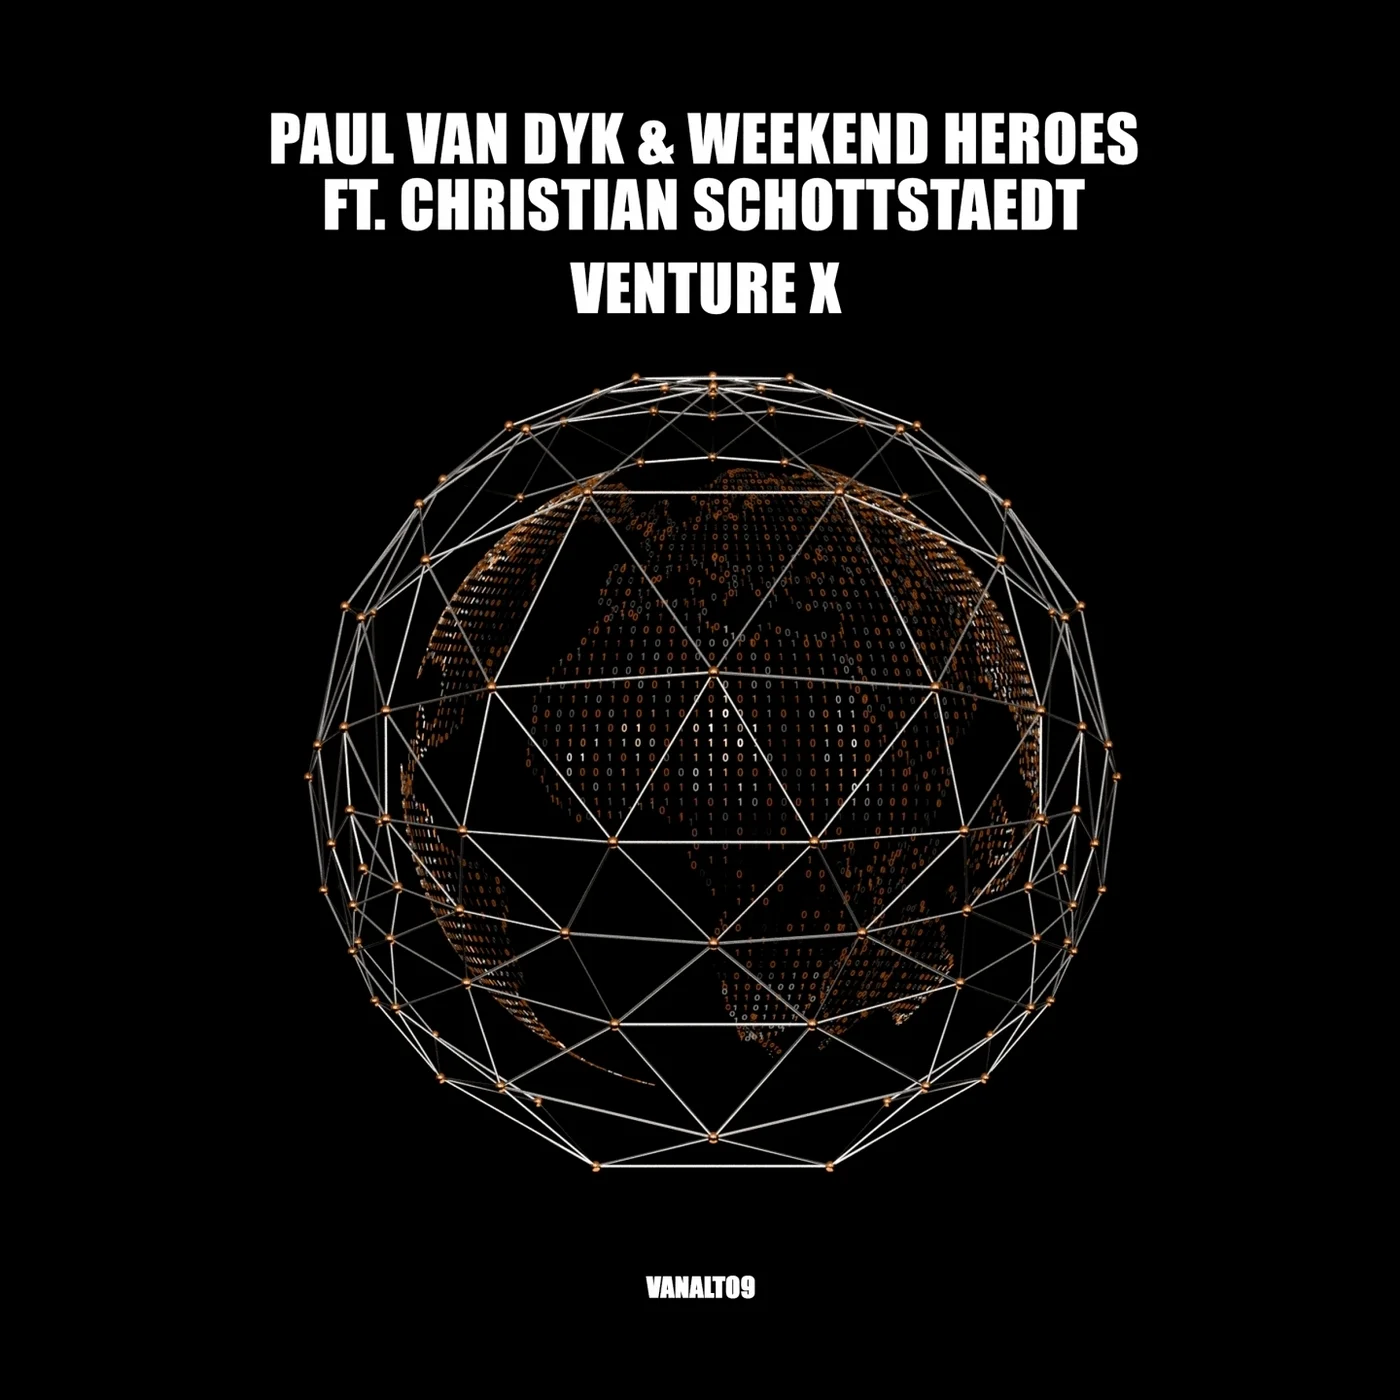 Paul van Dyk and Weekend Heroes feat. Christian Schottstaedt presents VENTURE X on Vandit Records